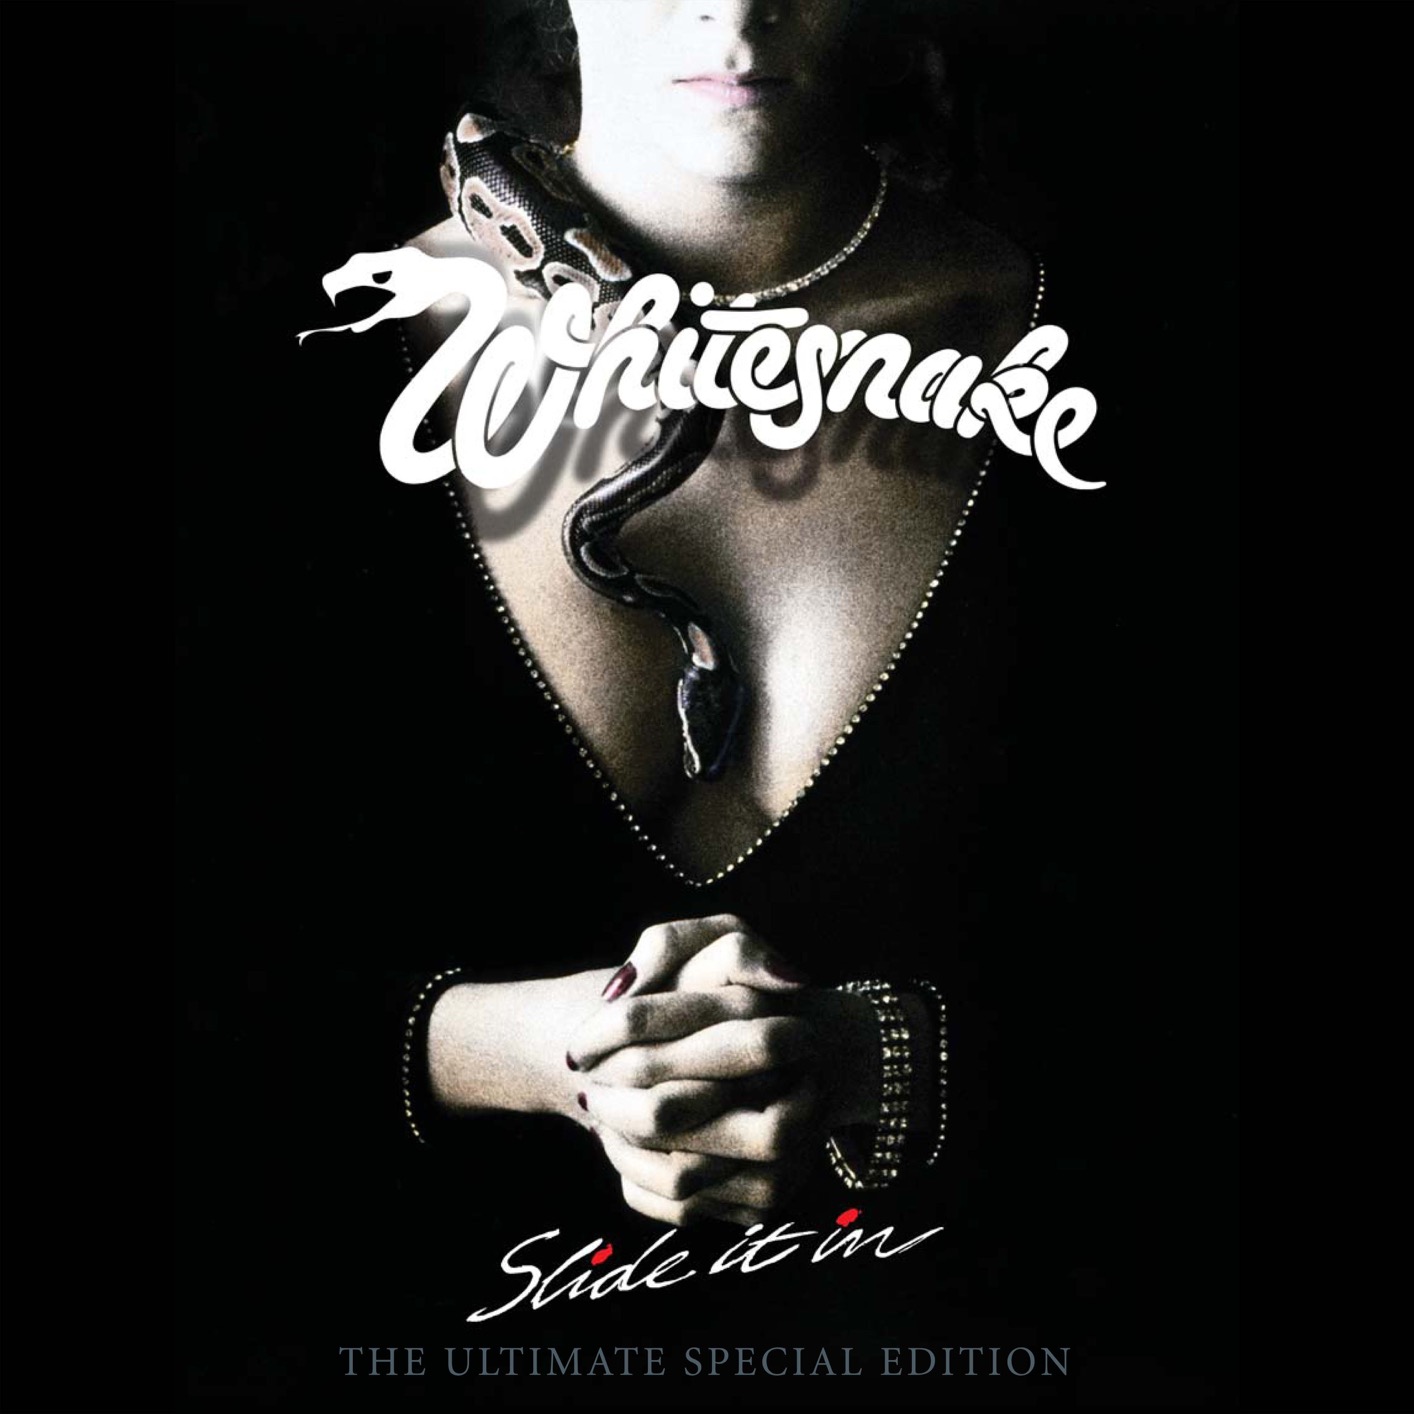 Whitesnake – Slide It In: The Ultimate Edition (2019 Remaster) (2019) [FLAC 24bit/96kHz]